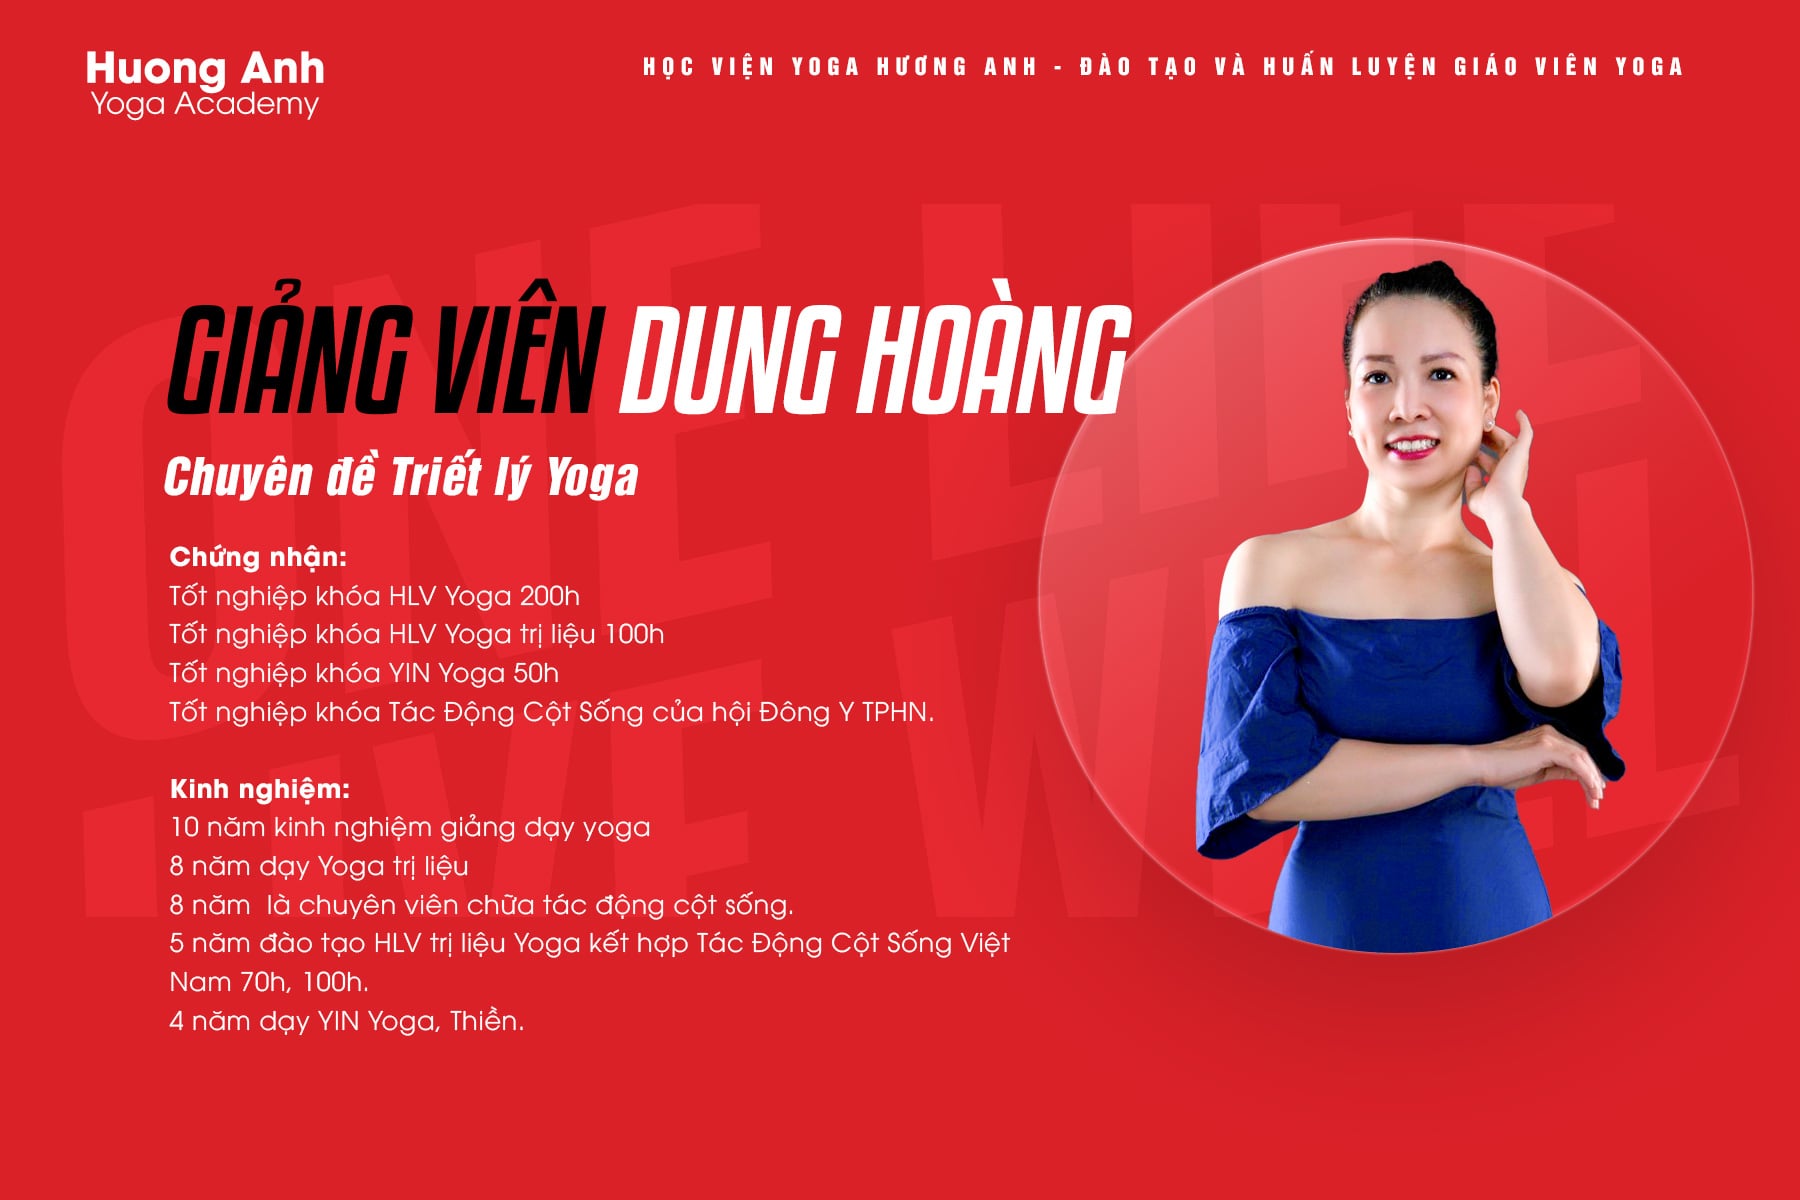 HLV Dung Hoang